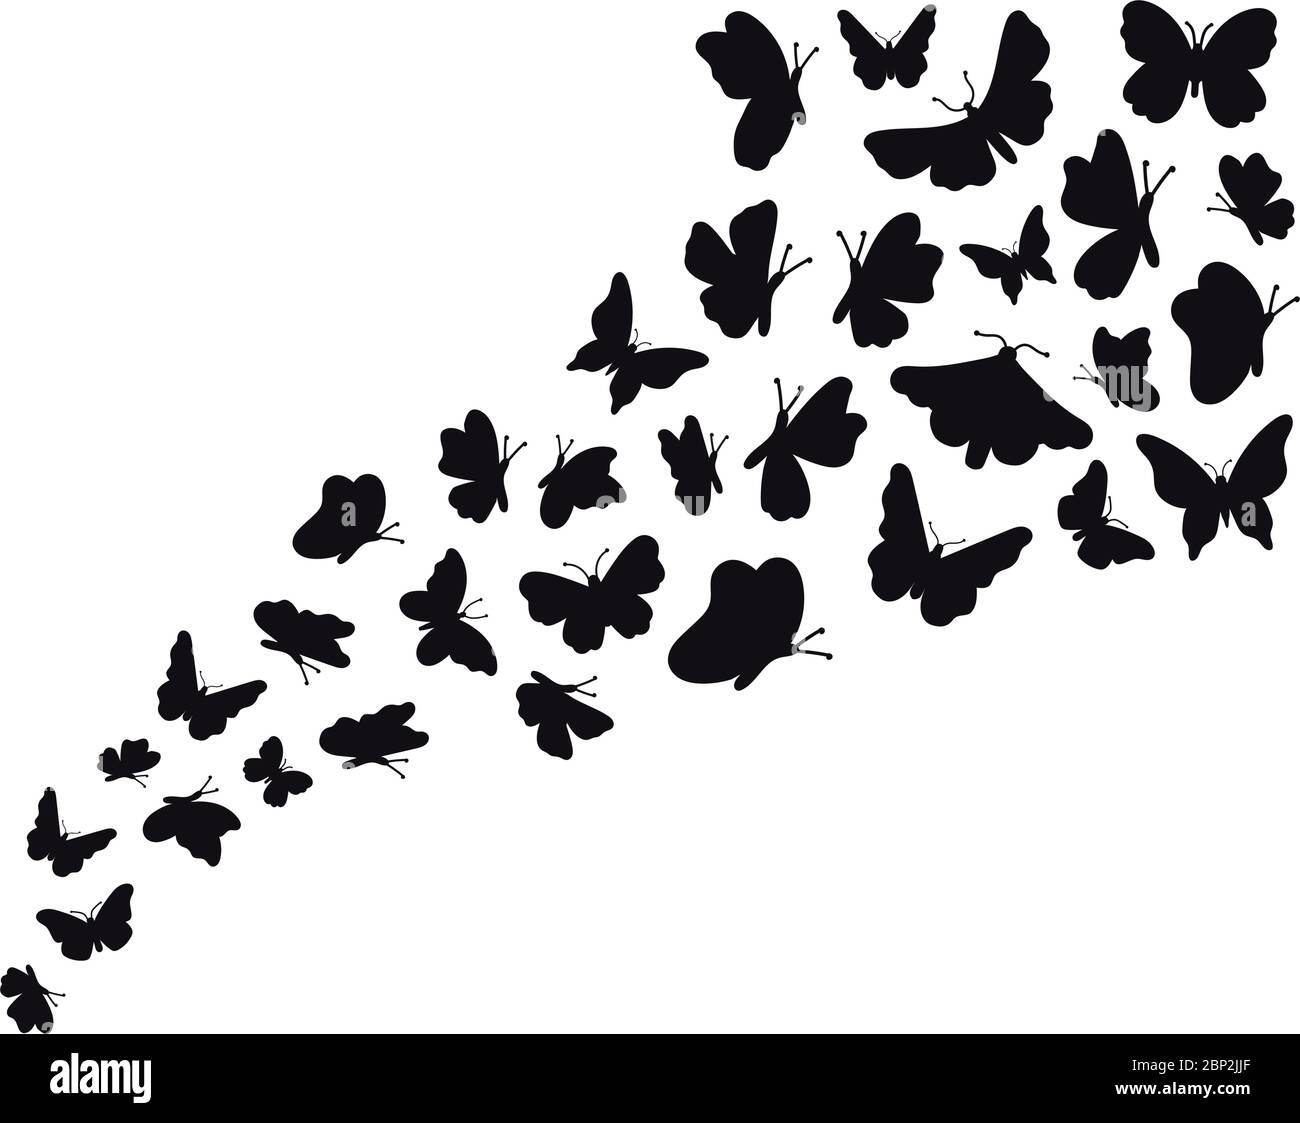 Fliegende schmetterlinge, schwarz-weiße silhouette, auf weißem